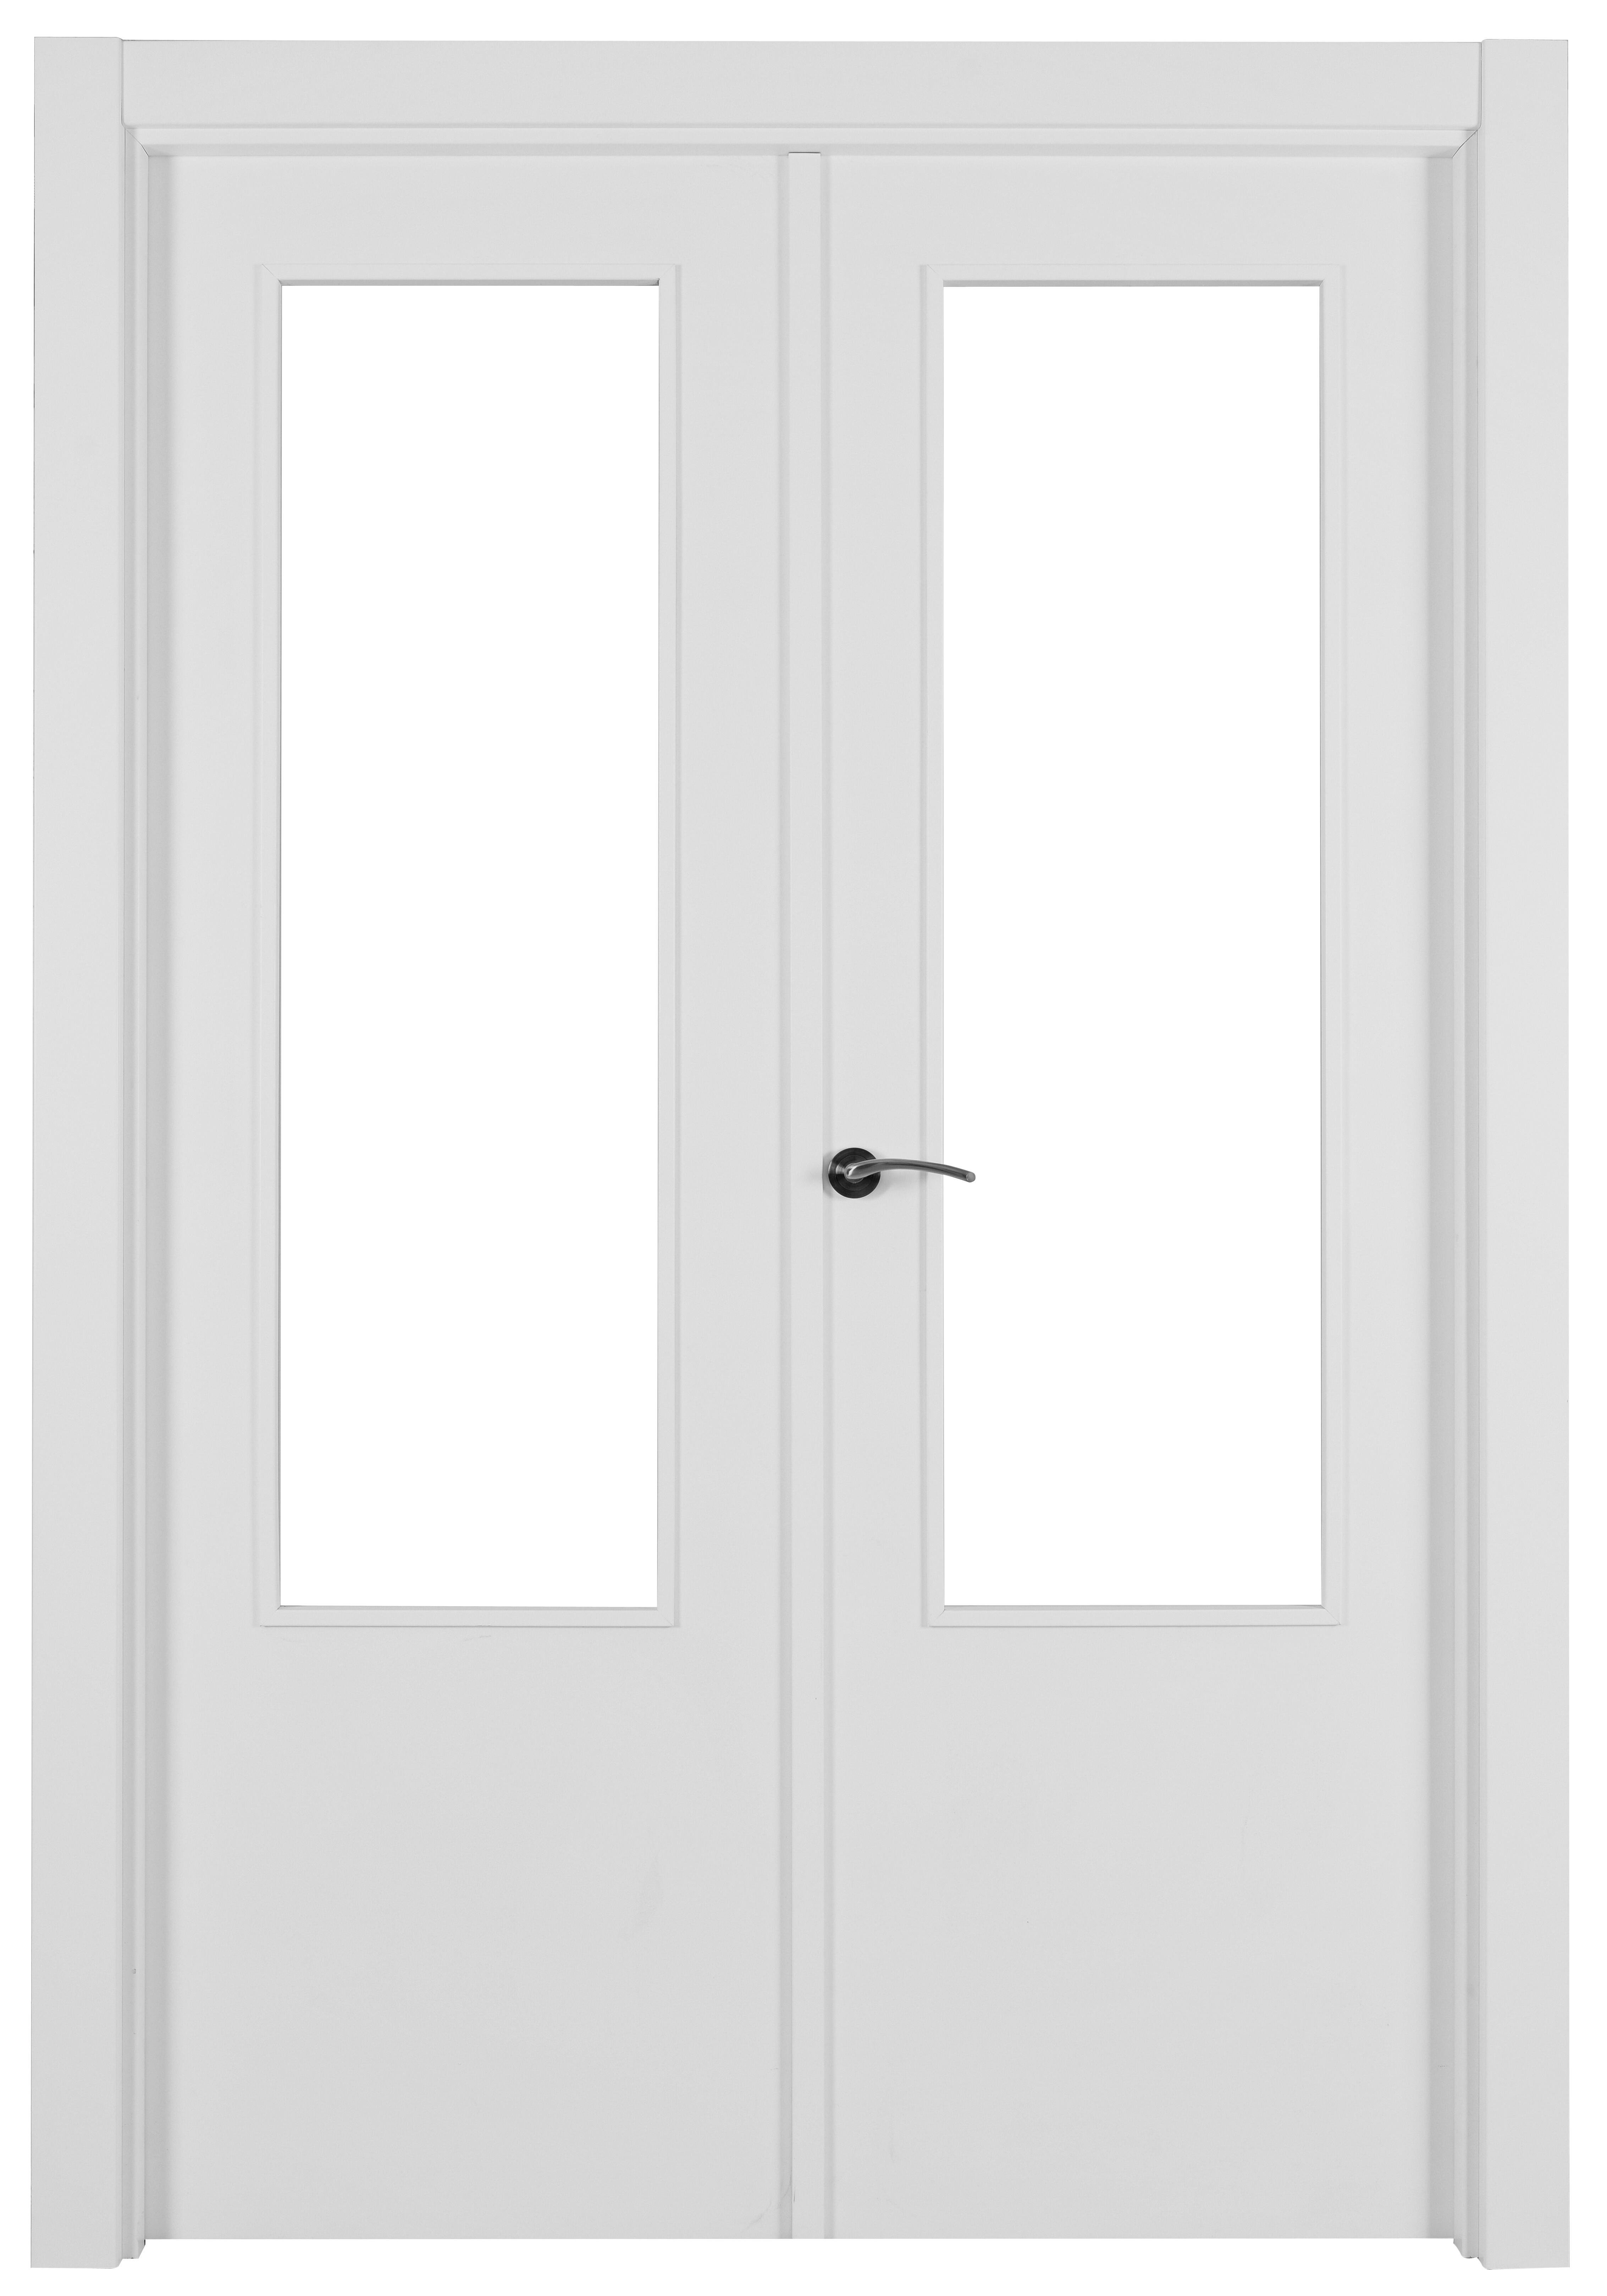 Puerta abatible lyon blanca aero blanco derecha con cristal de 110x30 y 145cm